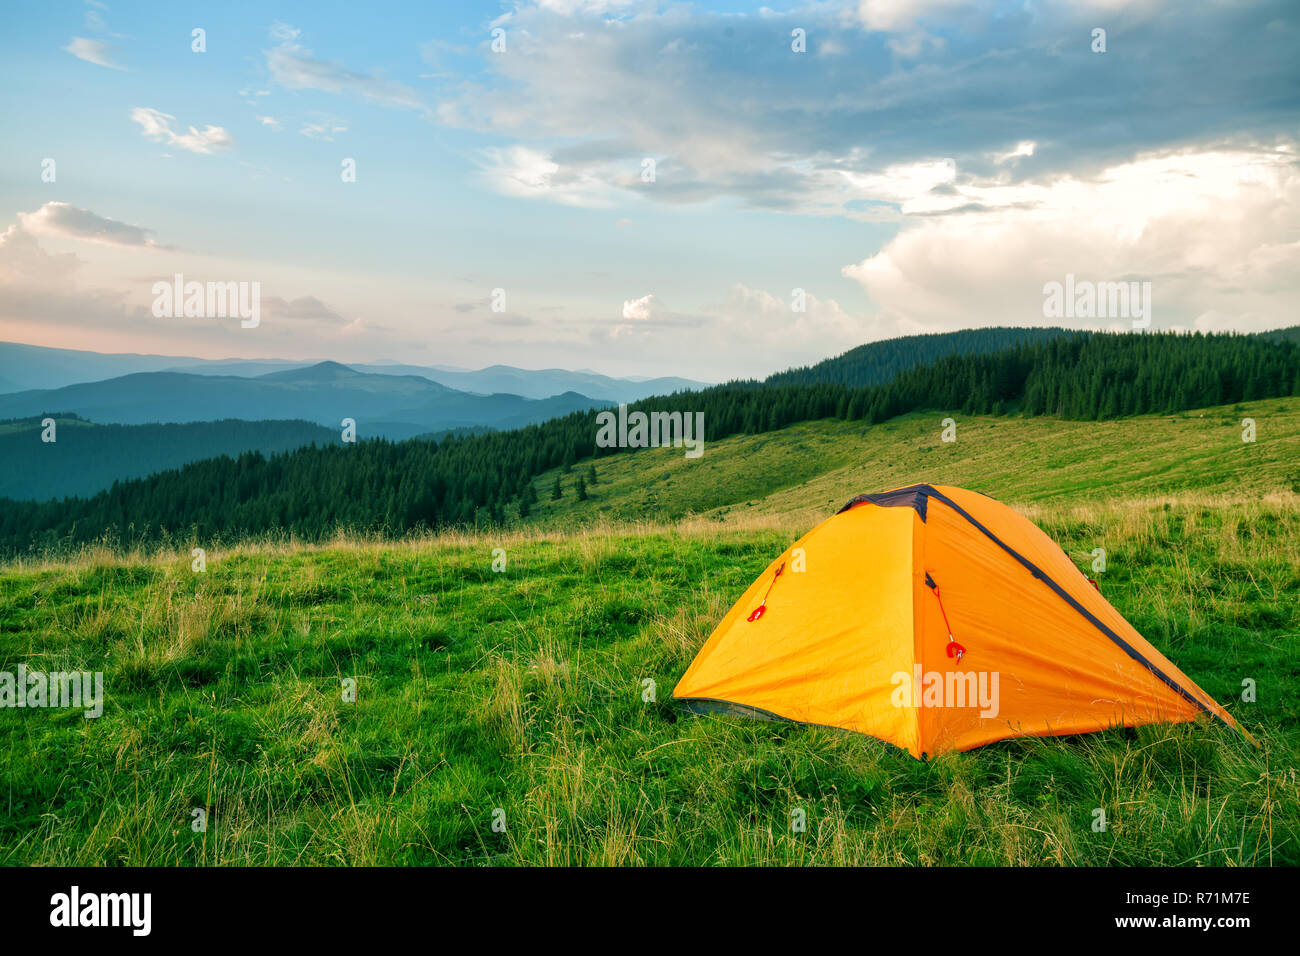 Orange tourist tent in the green mountains Stock Photo